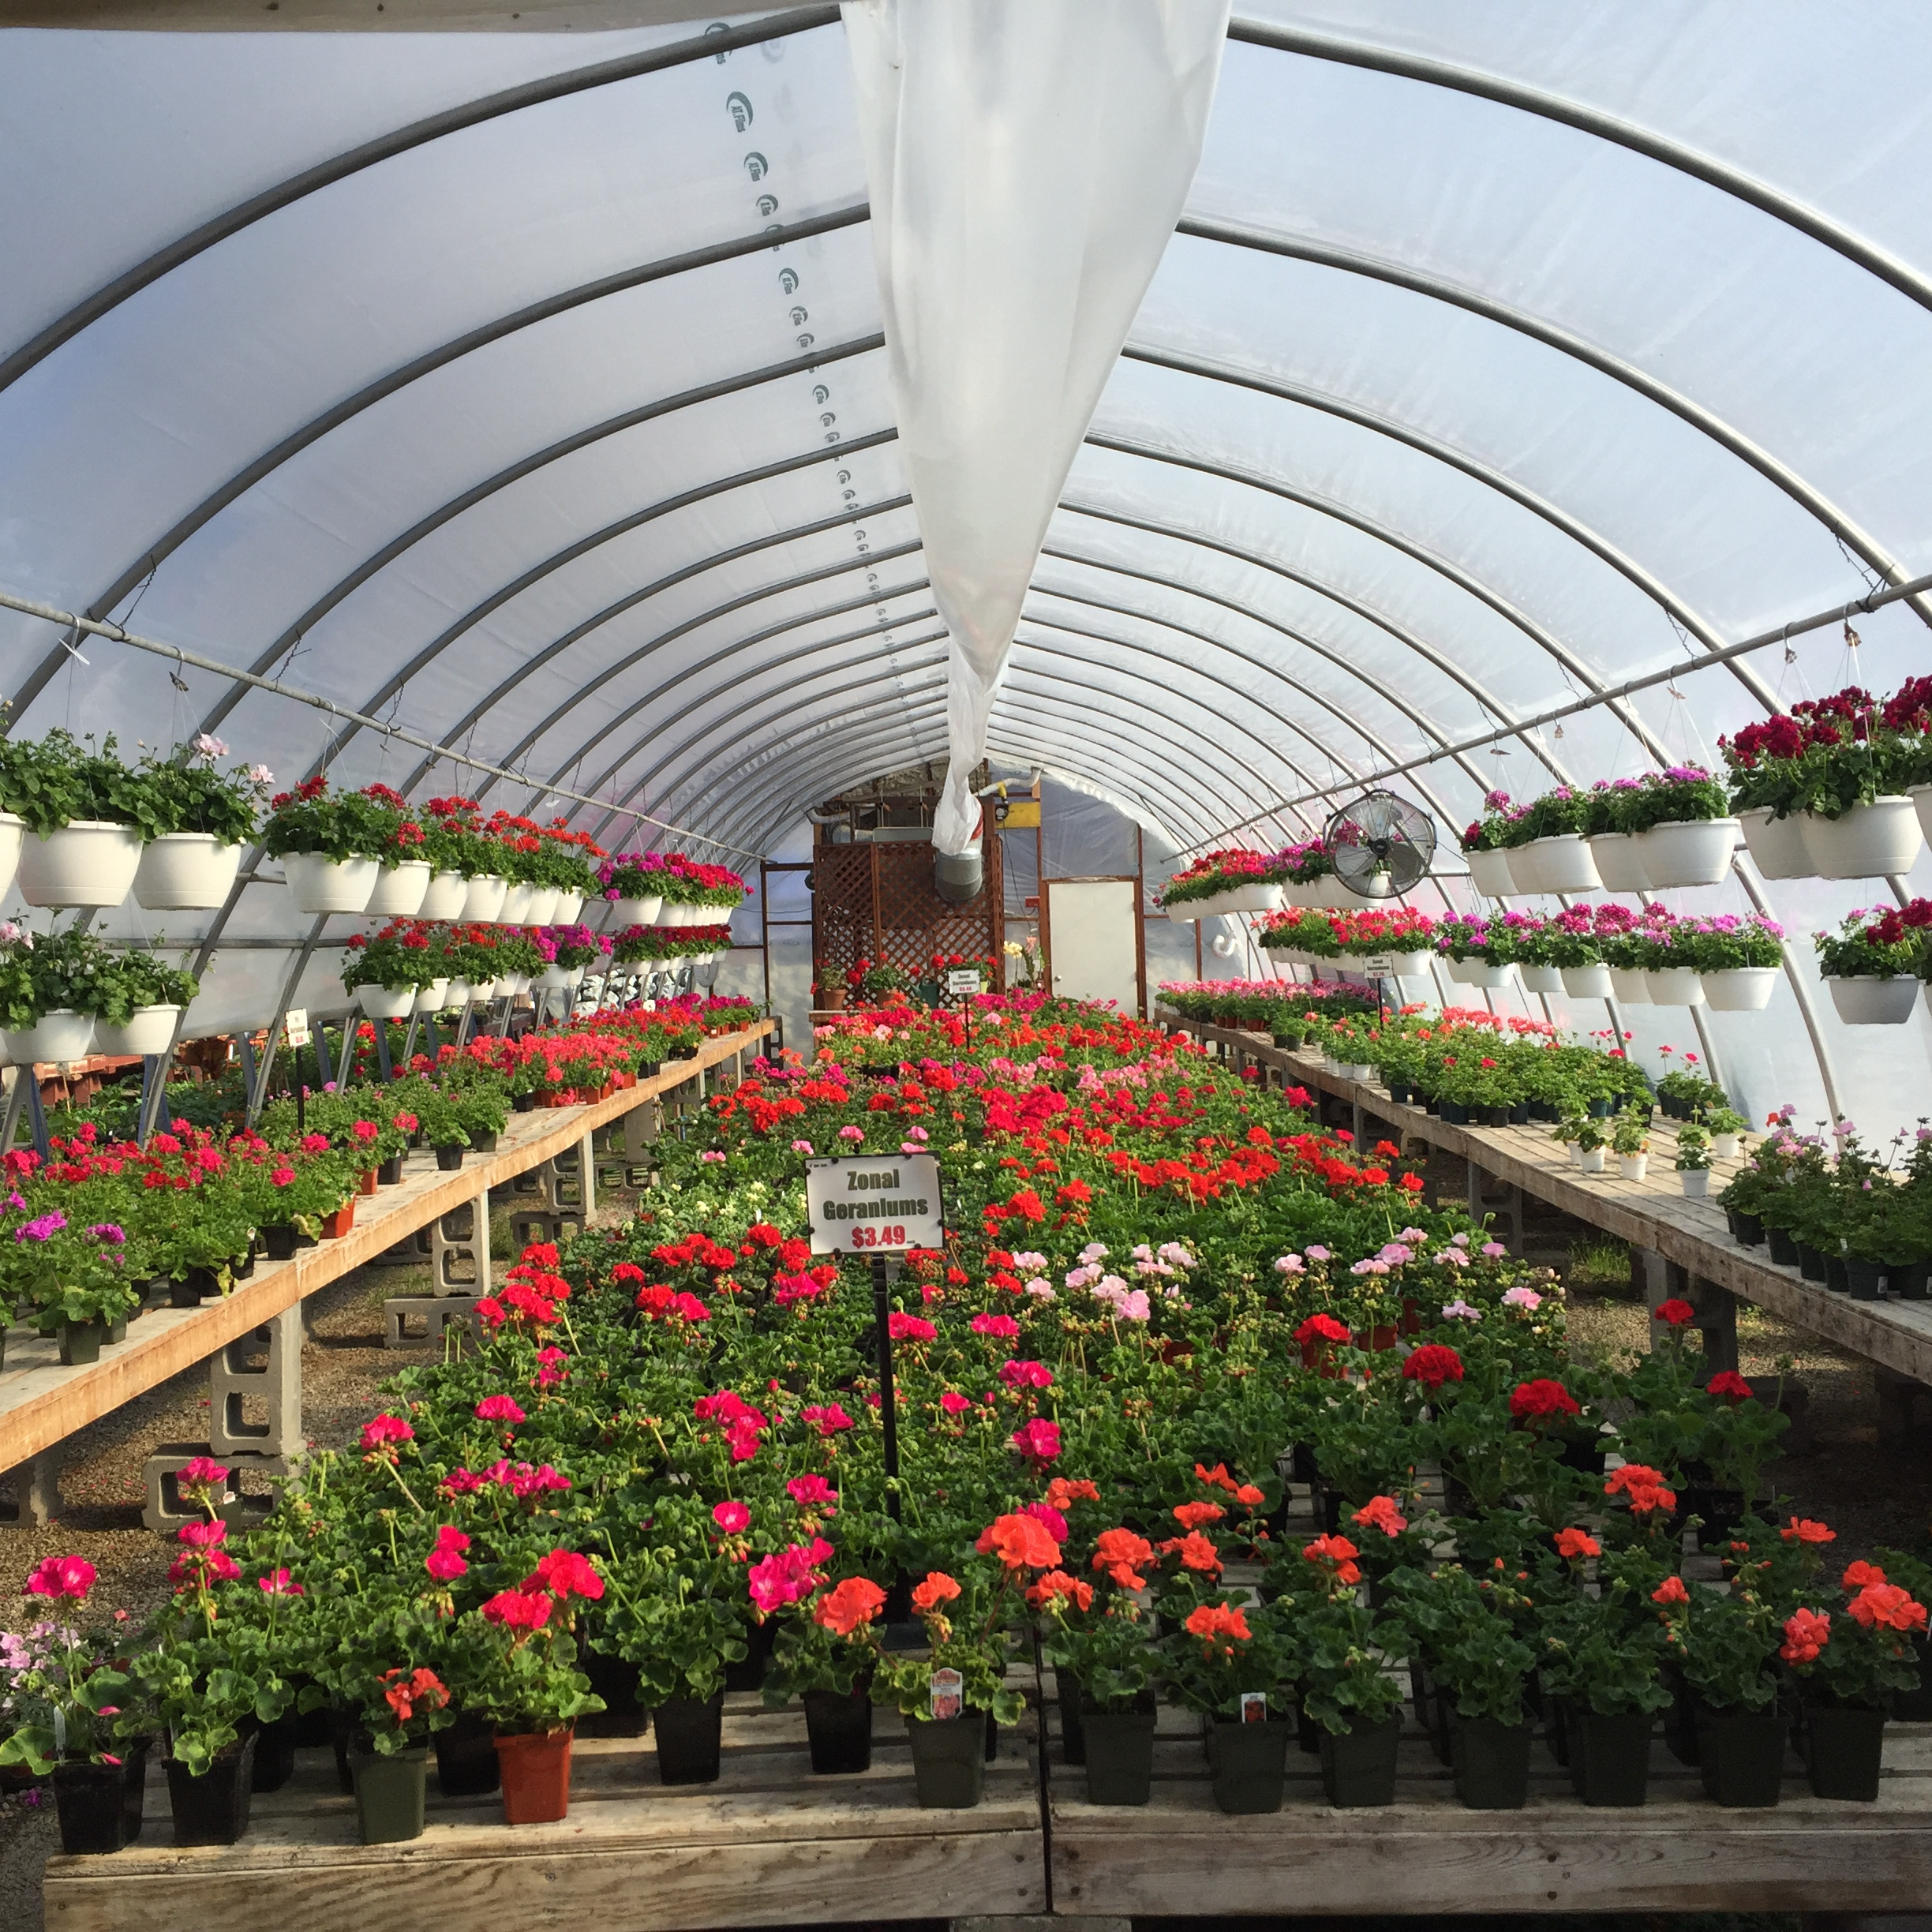 Geranium filled greenhouses